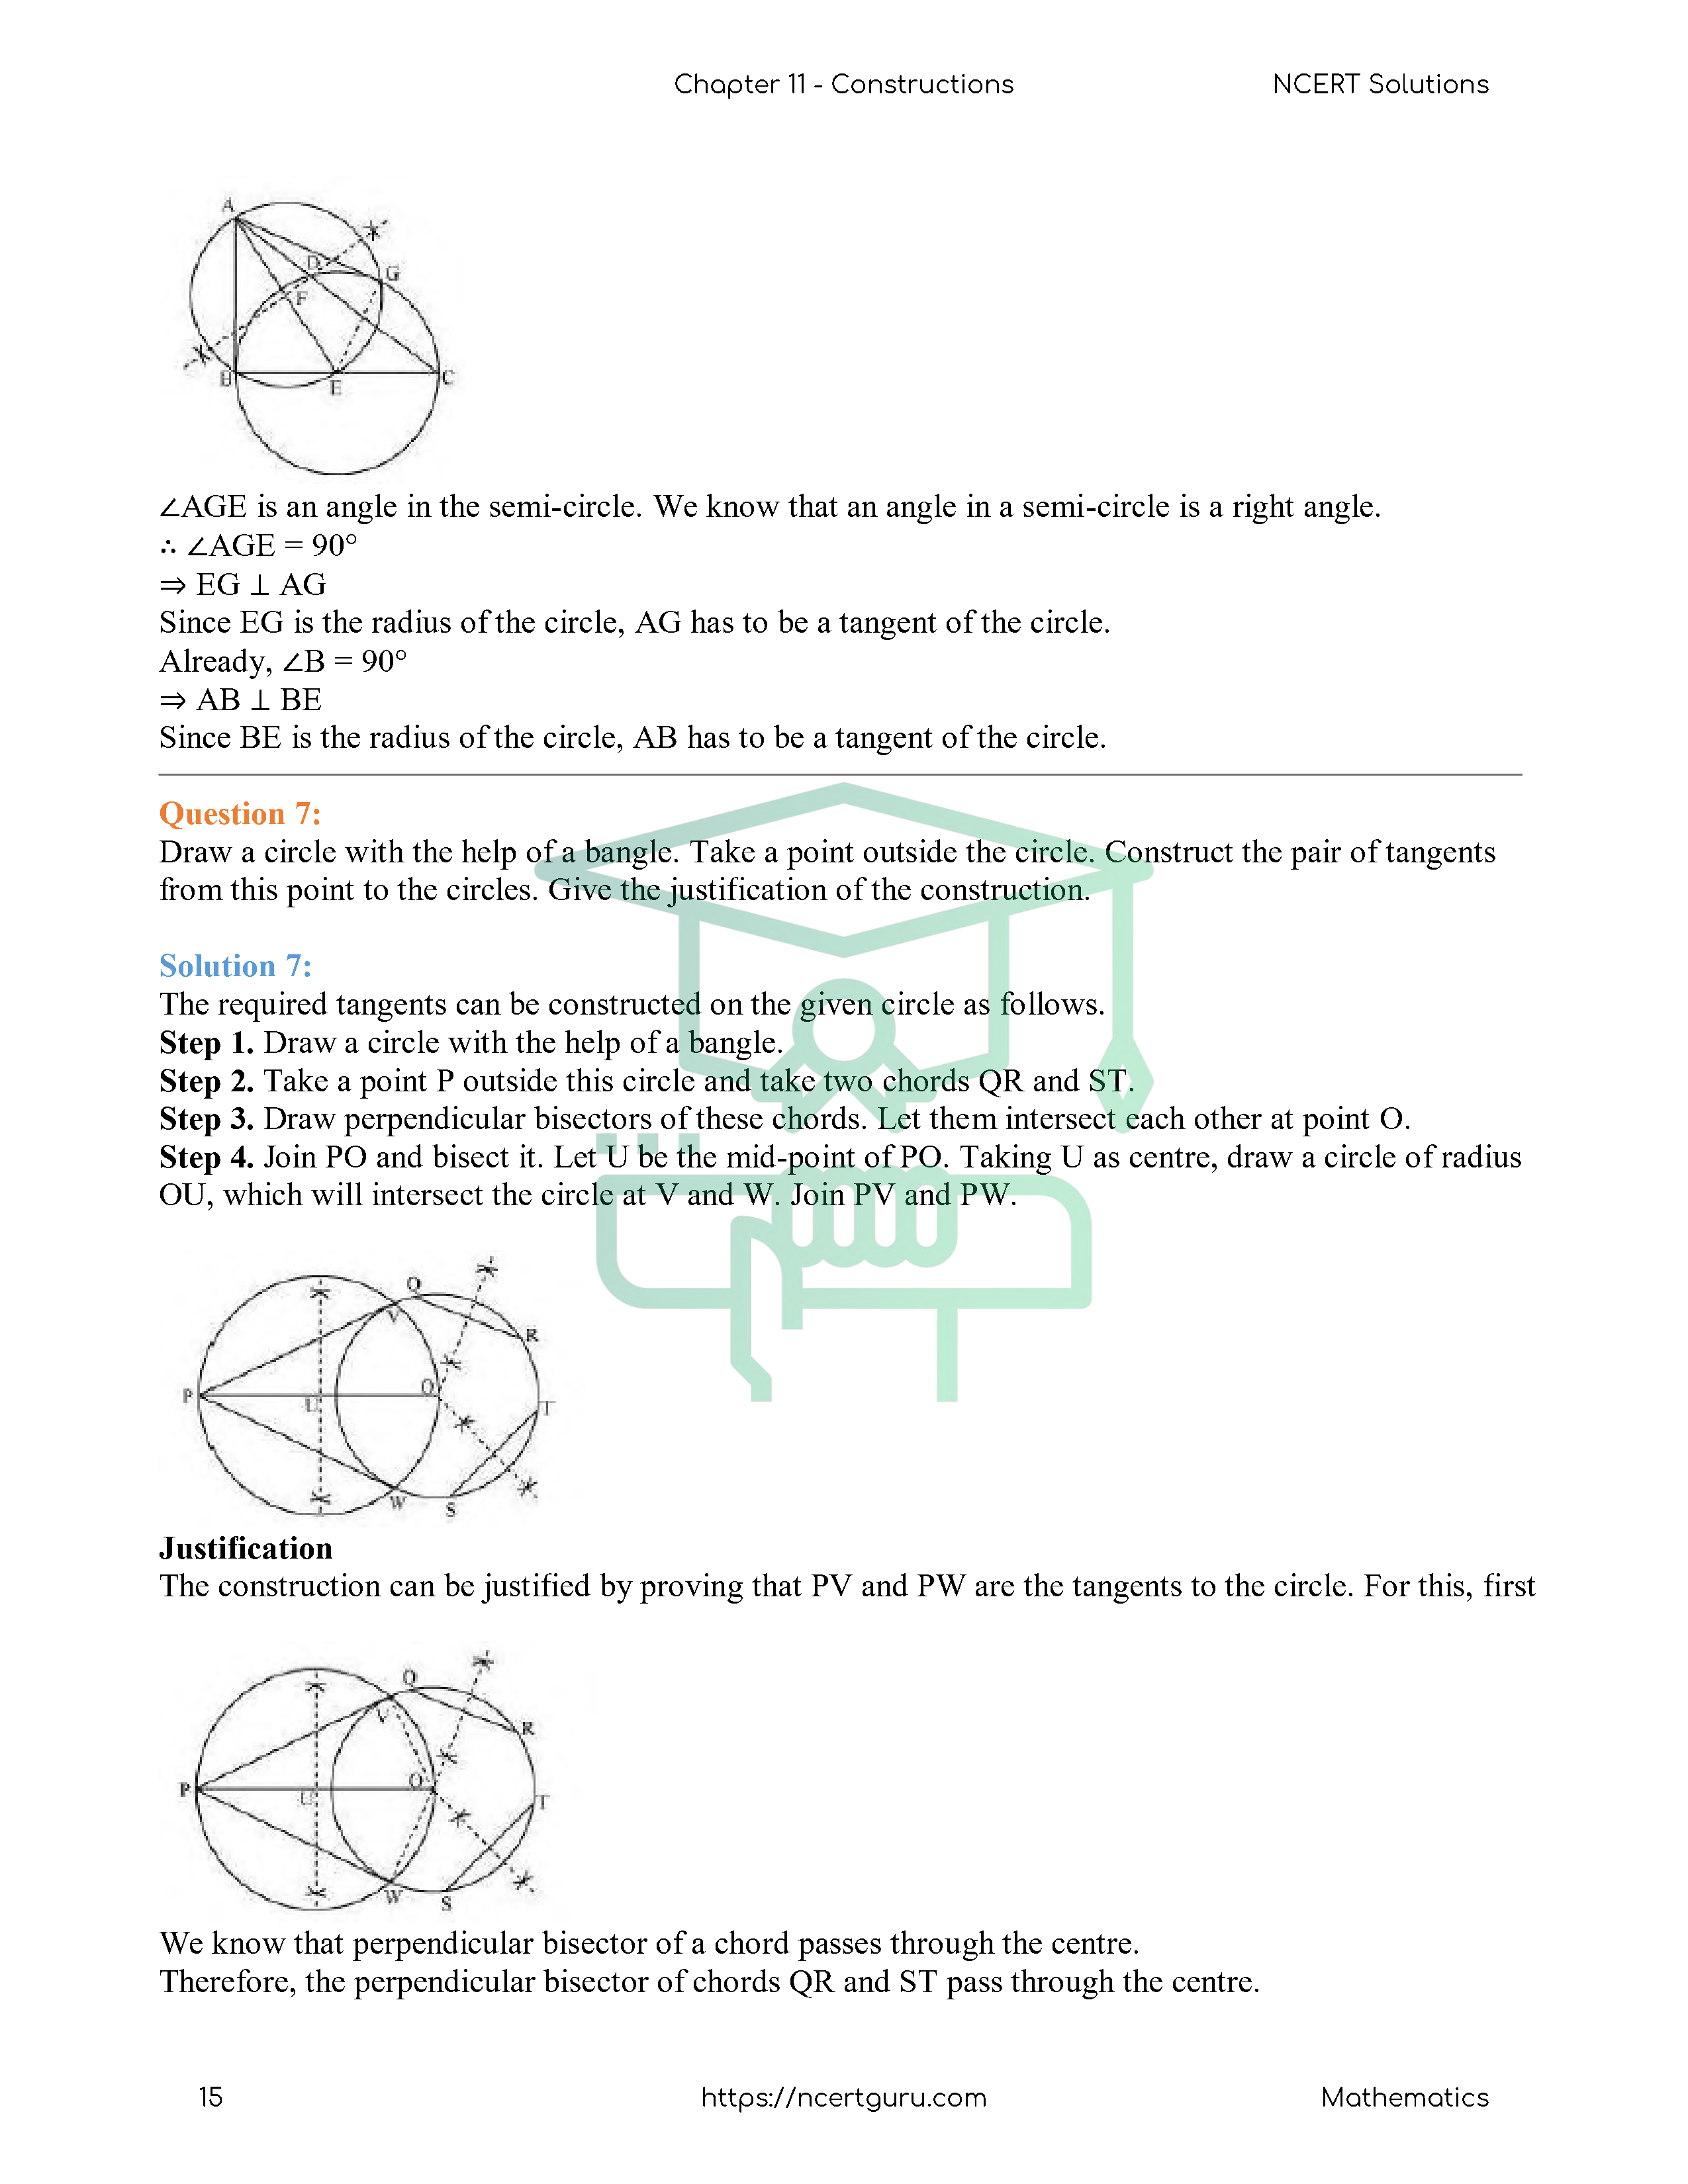 NCERT Solutions for Class 10 Maths Chapter 11